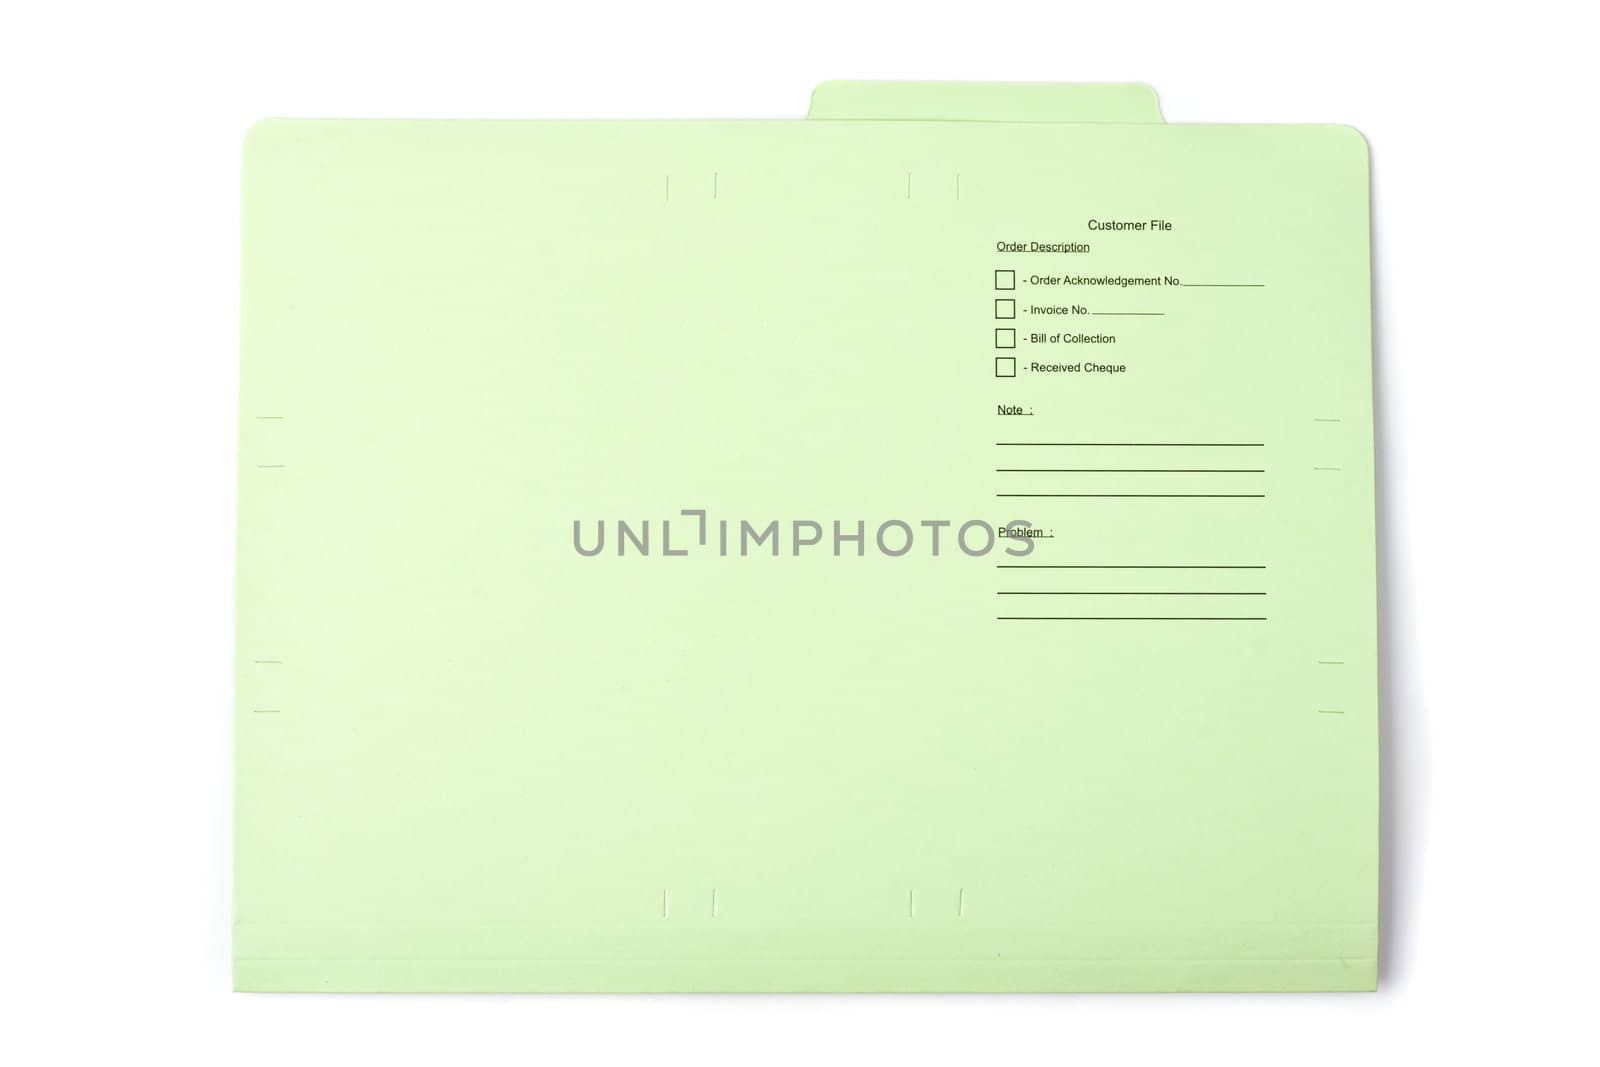 Green document folder on white background